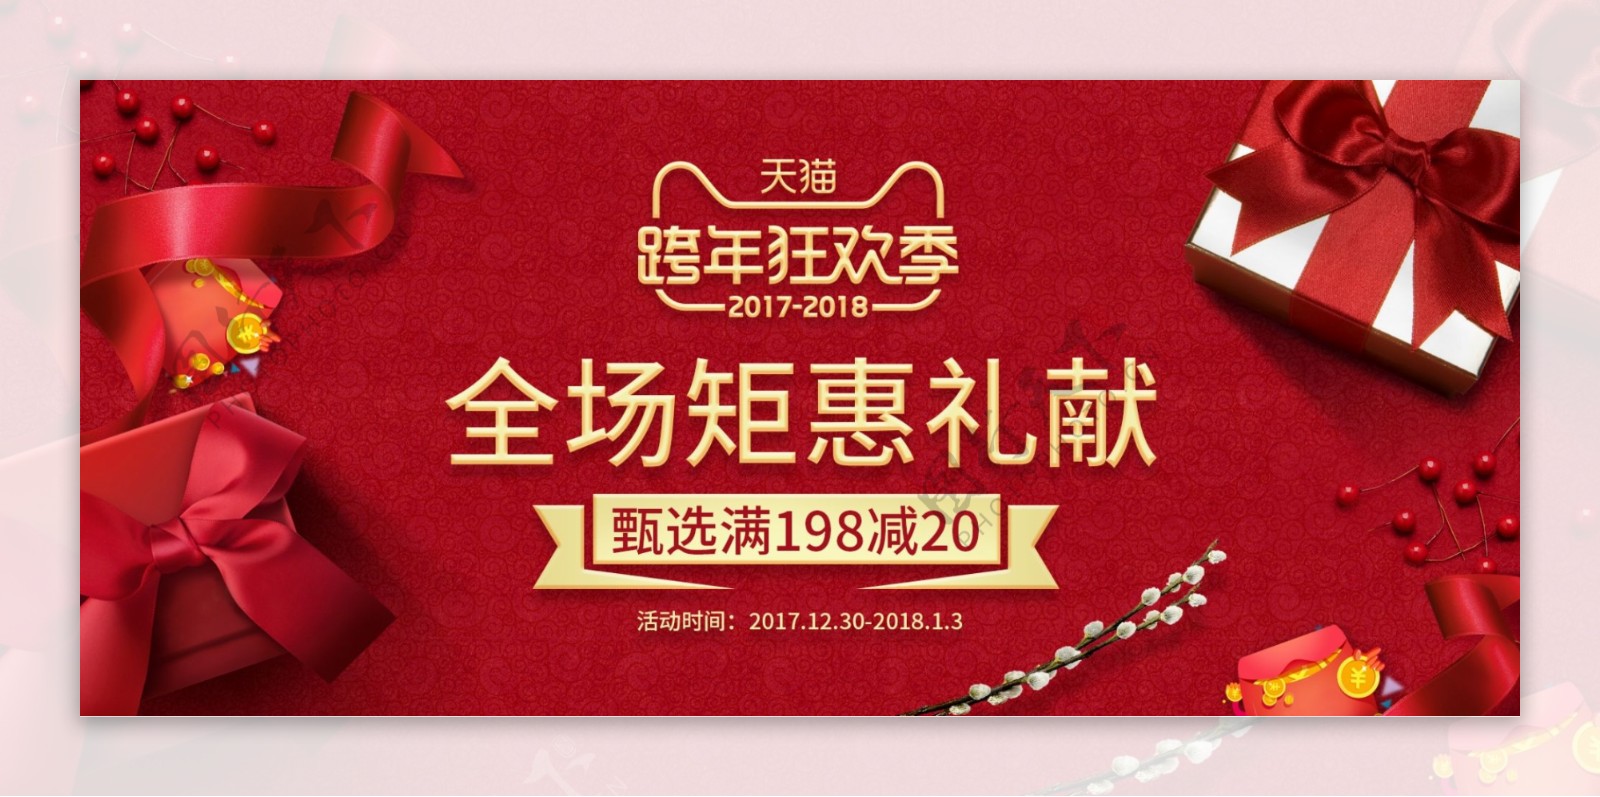 红色简约礼盒丝带新年跨年狂欢季春节海报